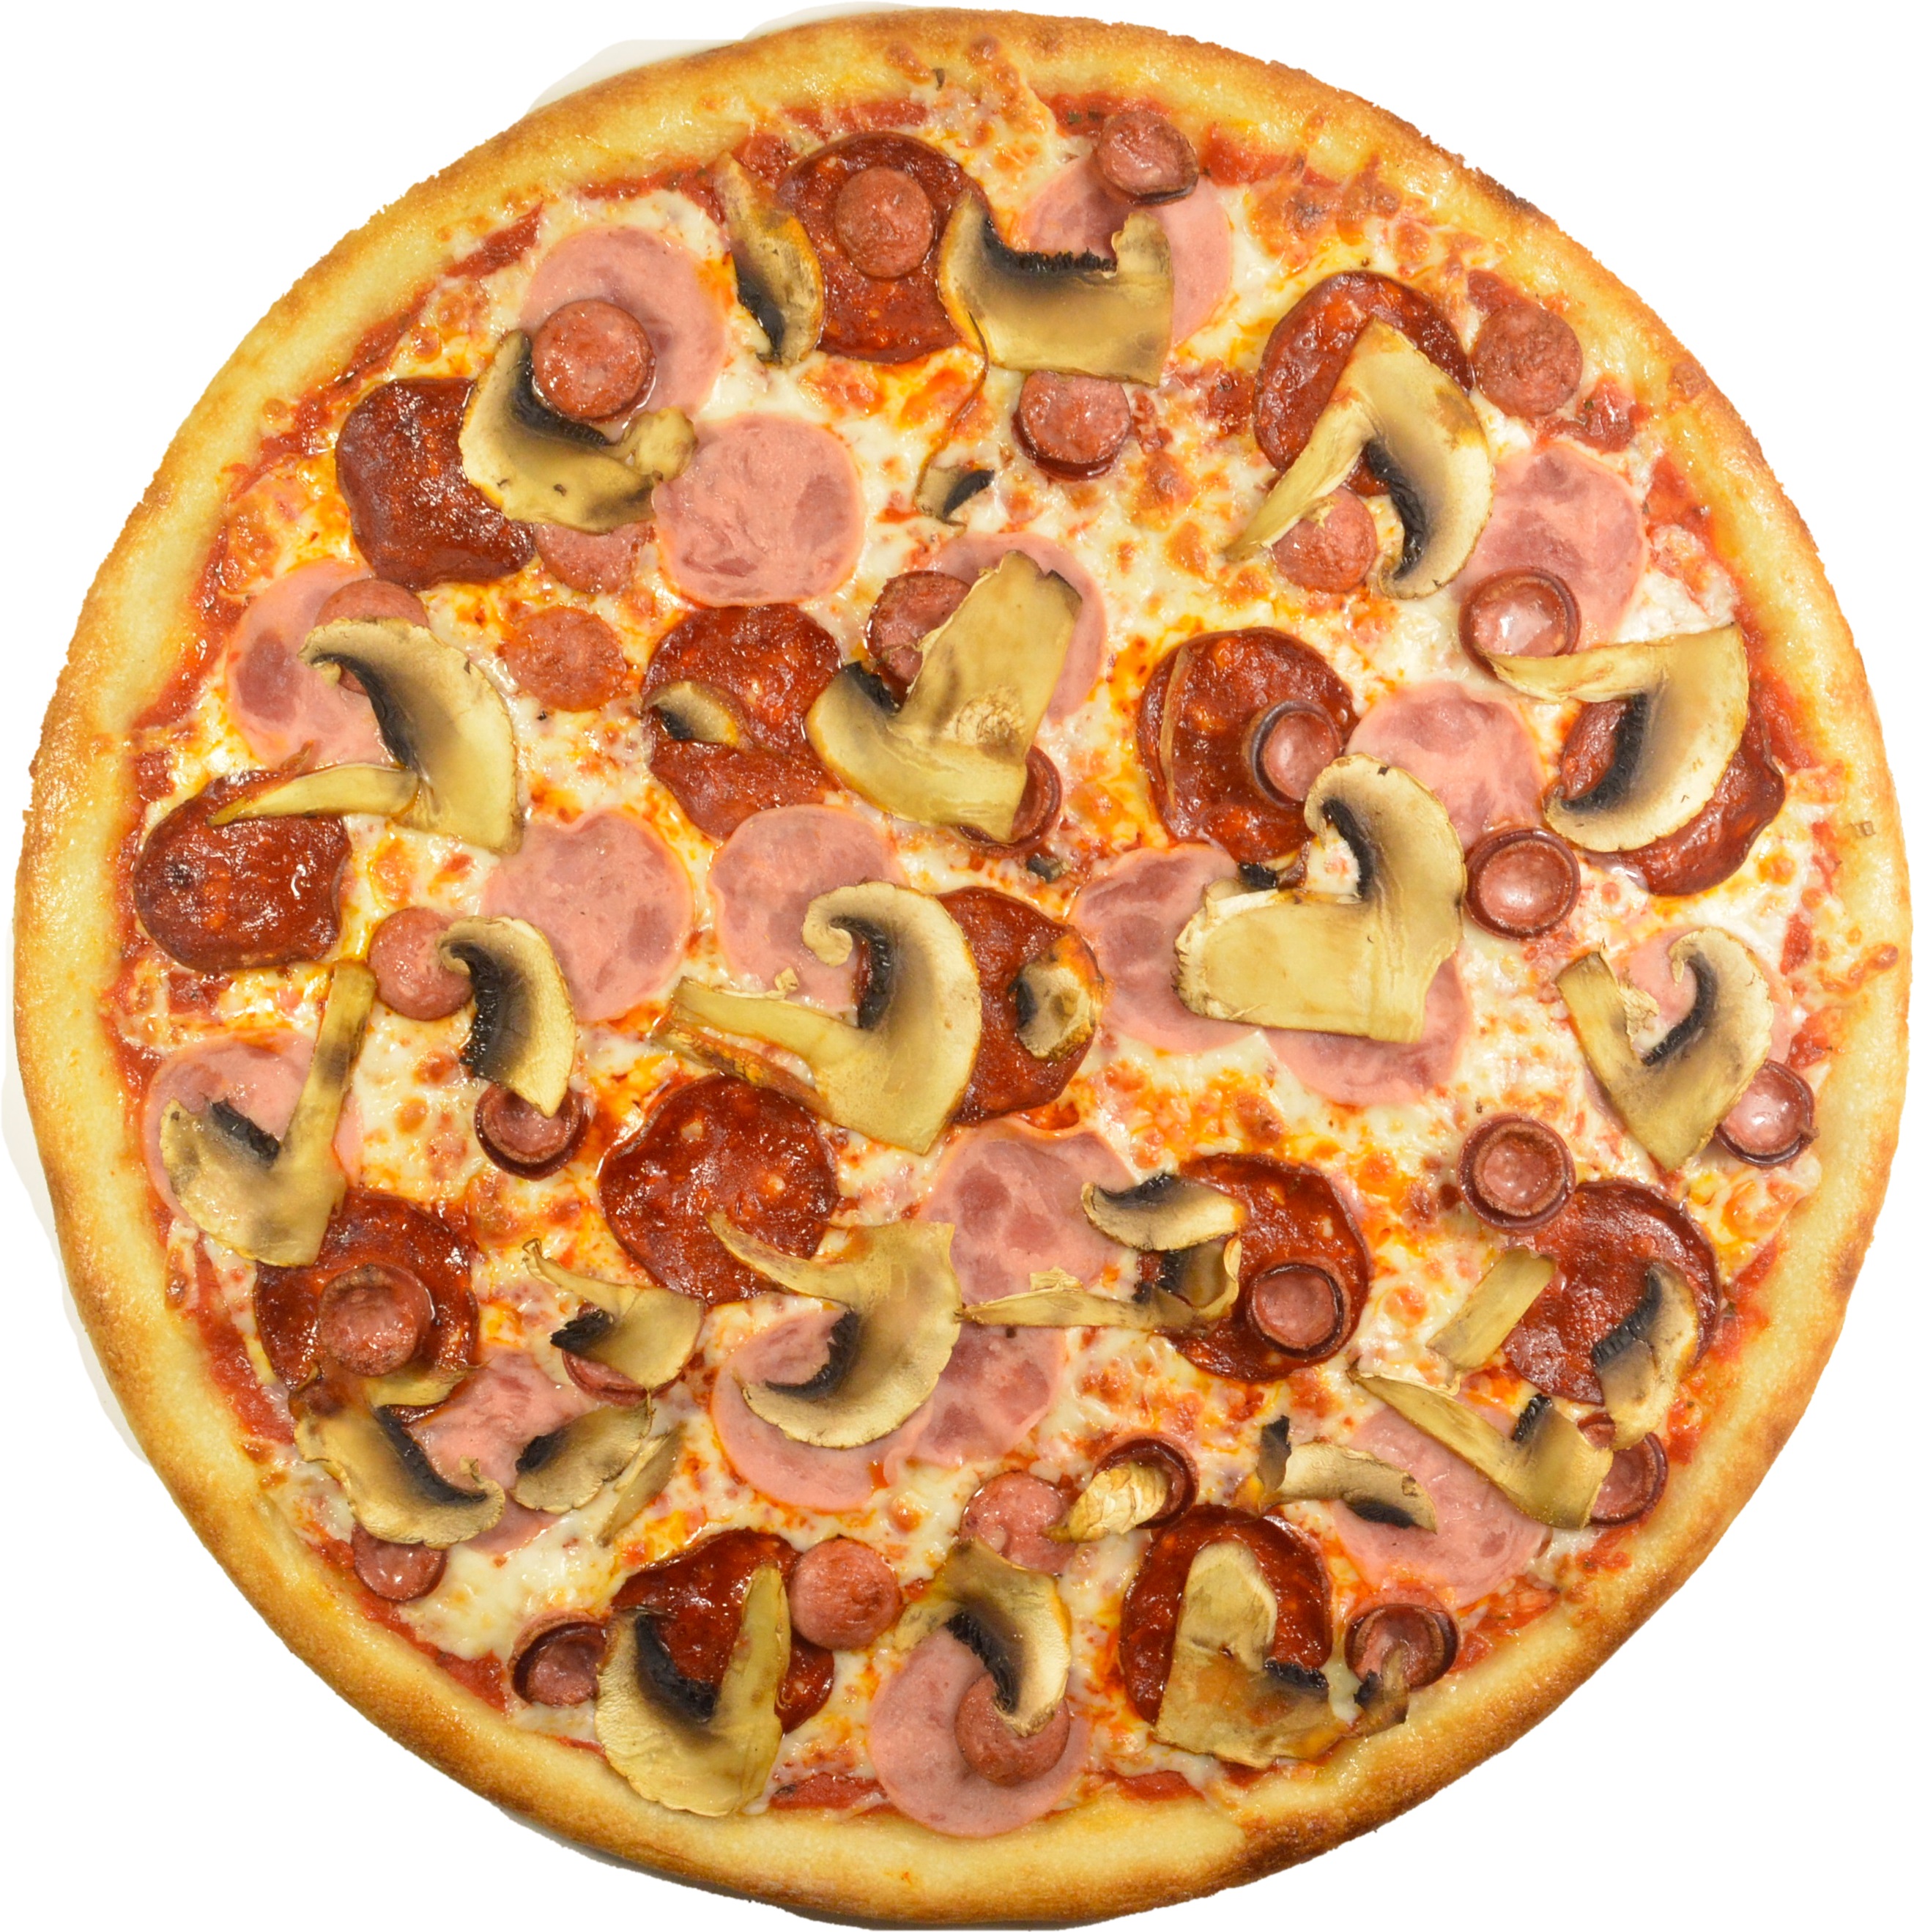 я хочу пиццу песто с пепперони и сосисками так же хочу другую с оливками фото 53